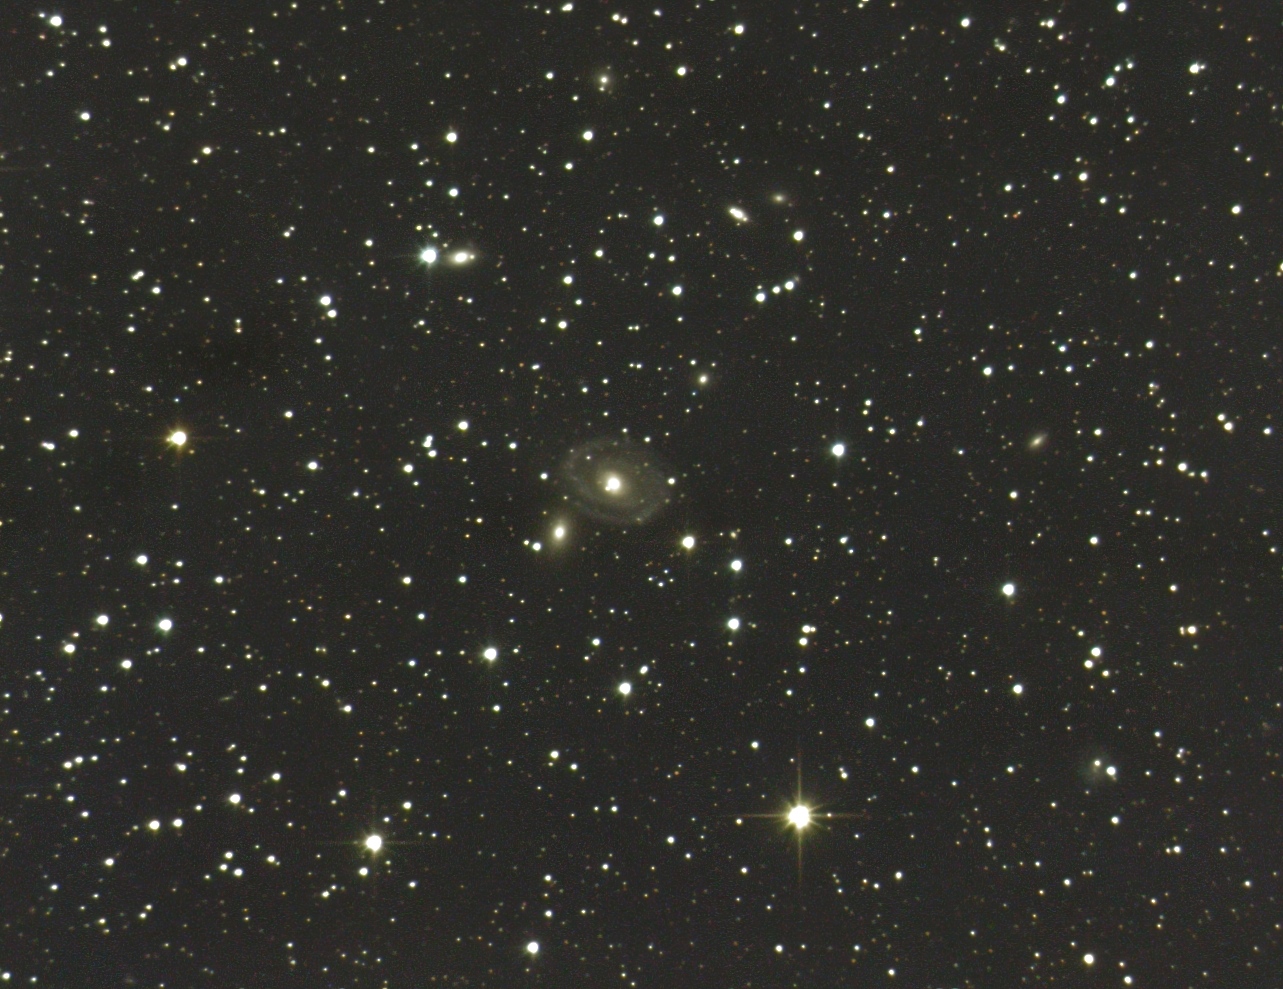 NGC 6962